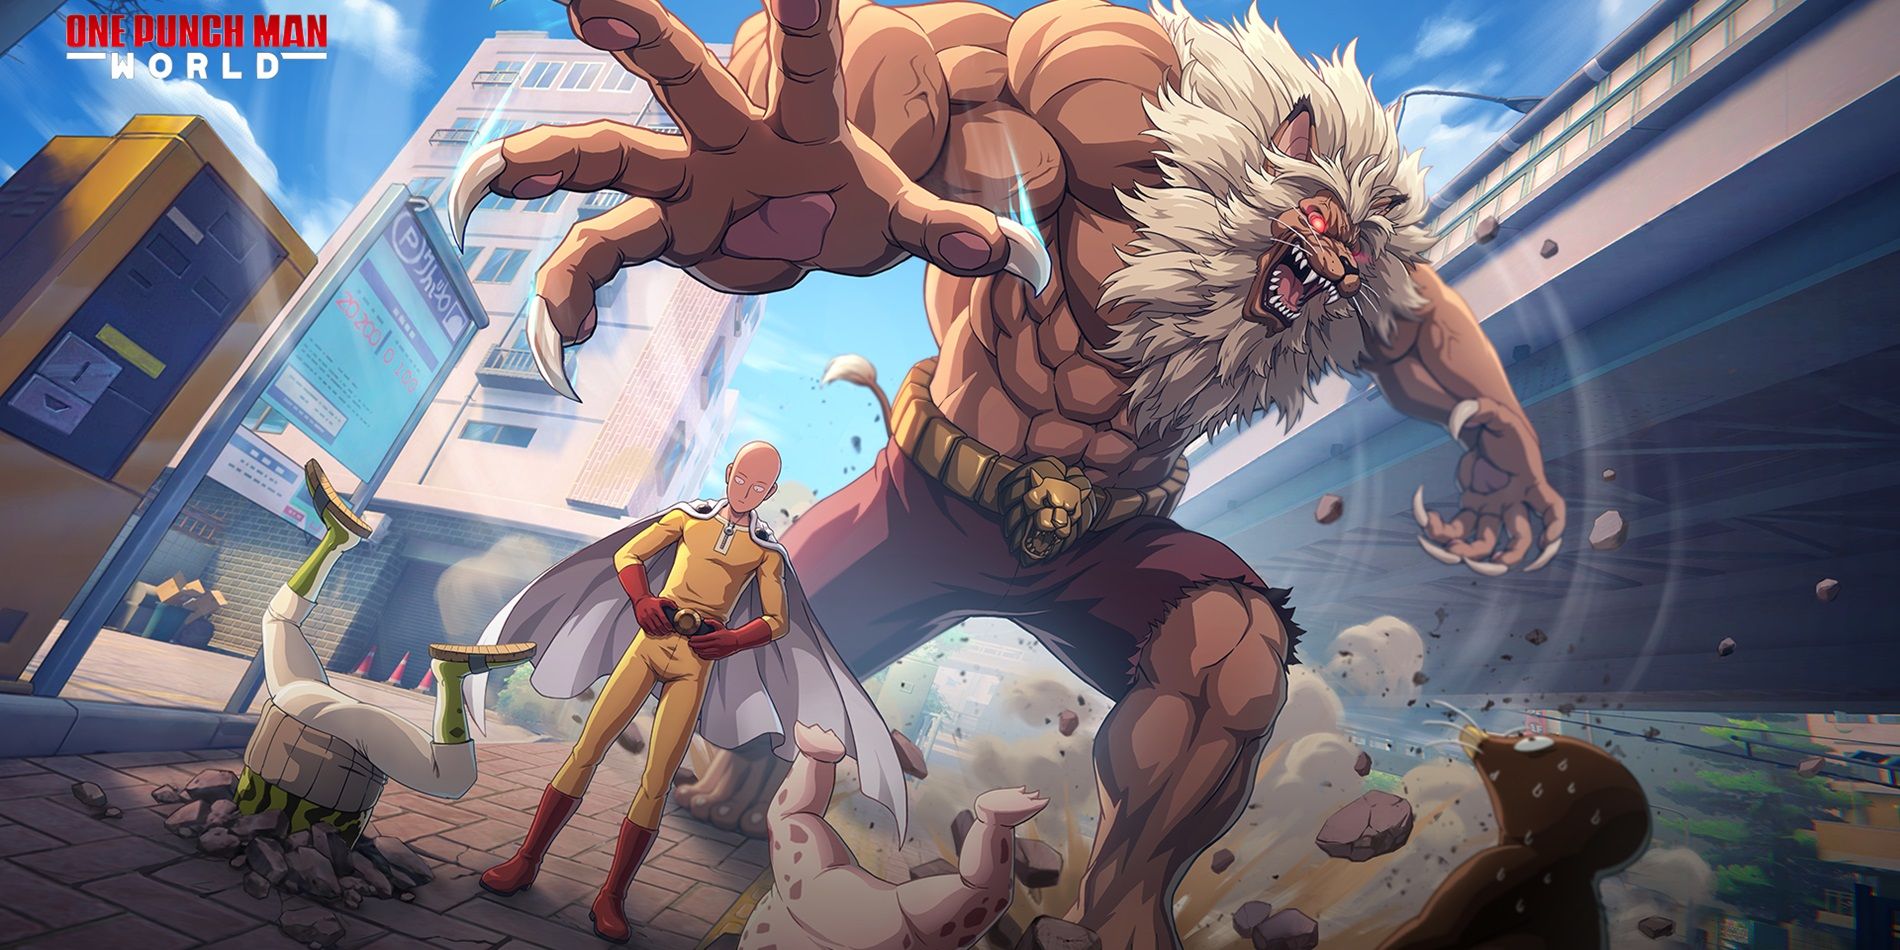 Imagen oficial de One Punch Man: World que muestra a Saitama siendo atacado por el Rey Bestia